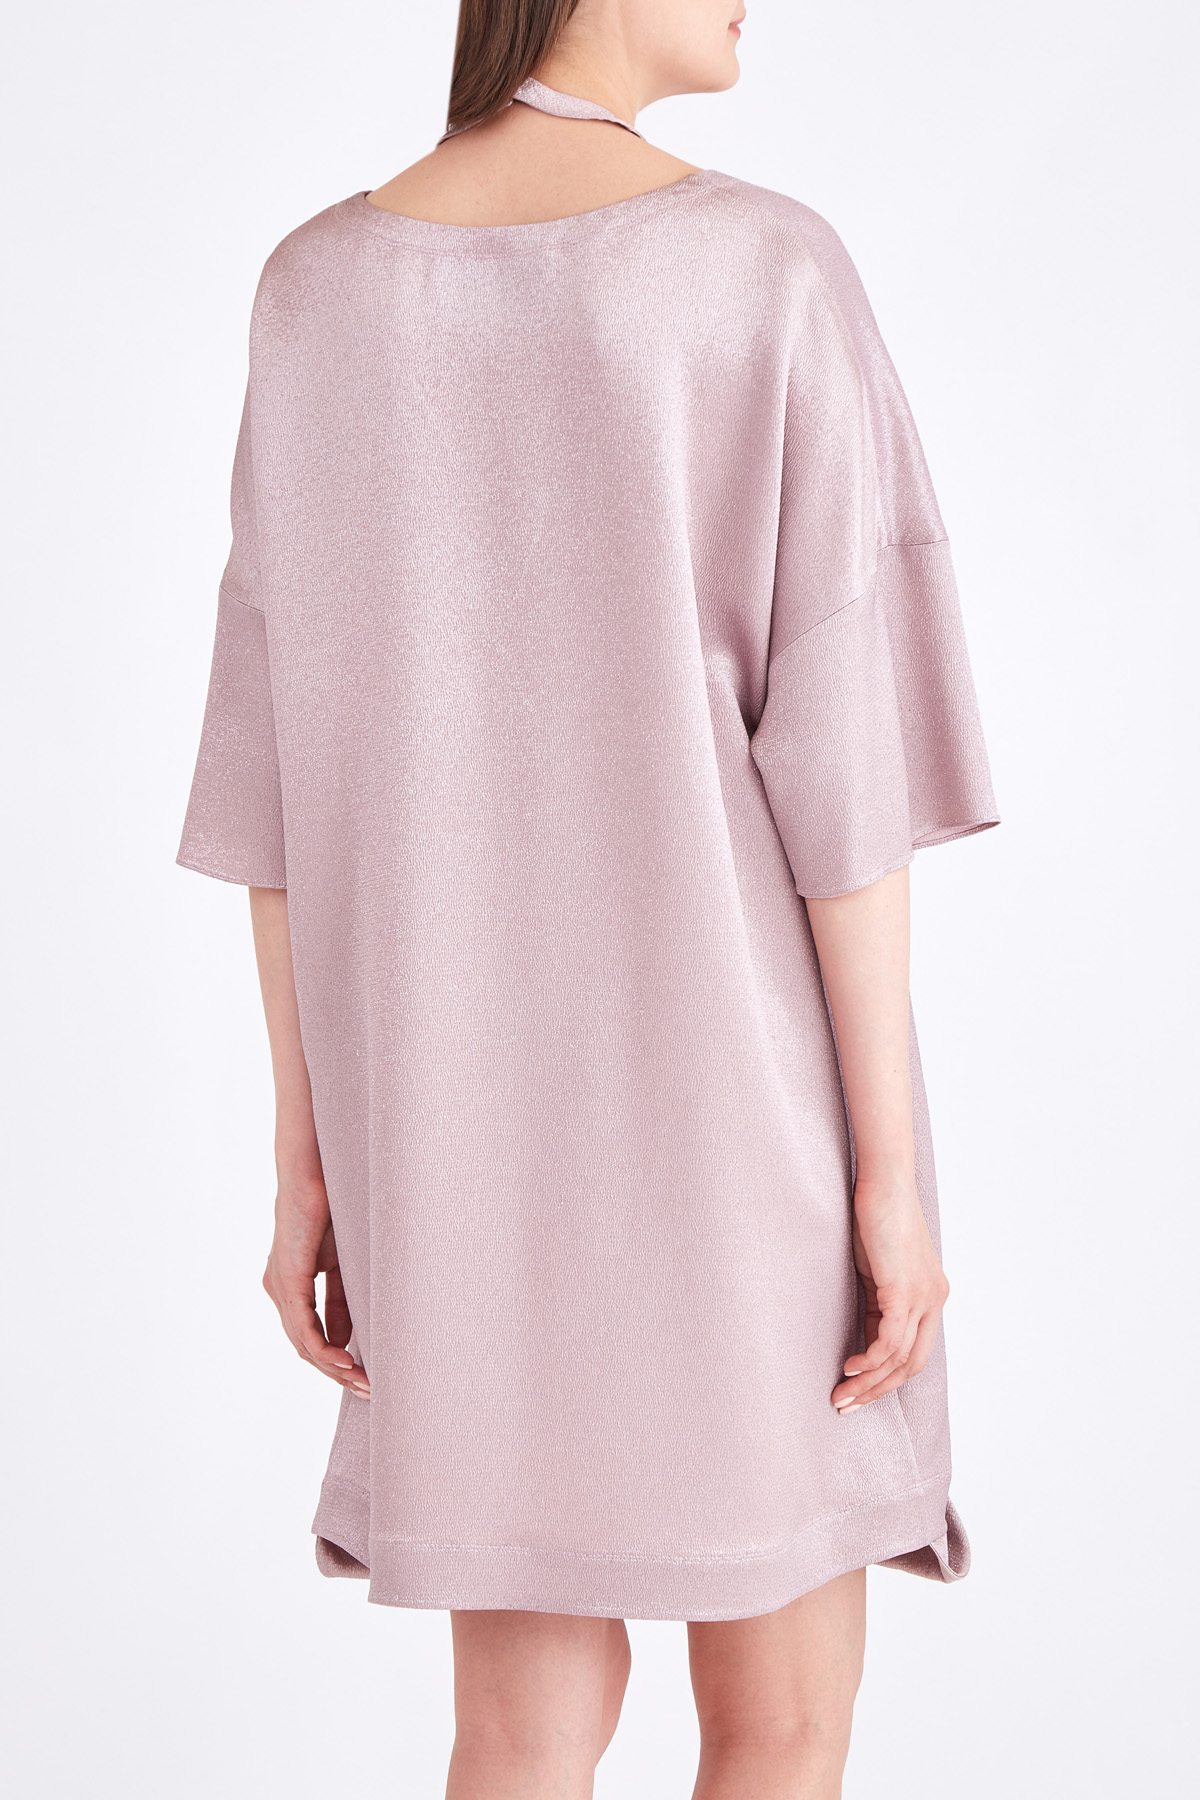 Платье из тисненого металлизрованного атласа с воротником-халтером VALENTINO, цвет розовый, размер 42;44 - фото 4